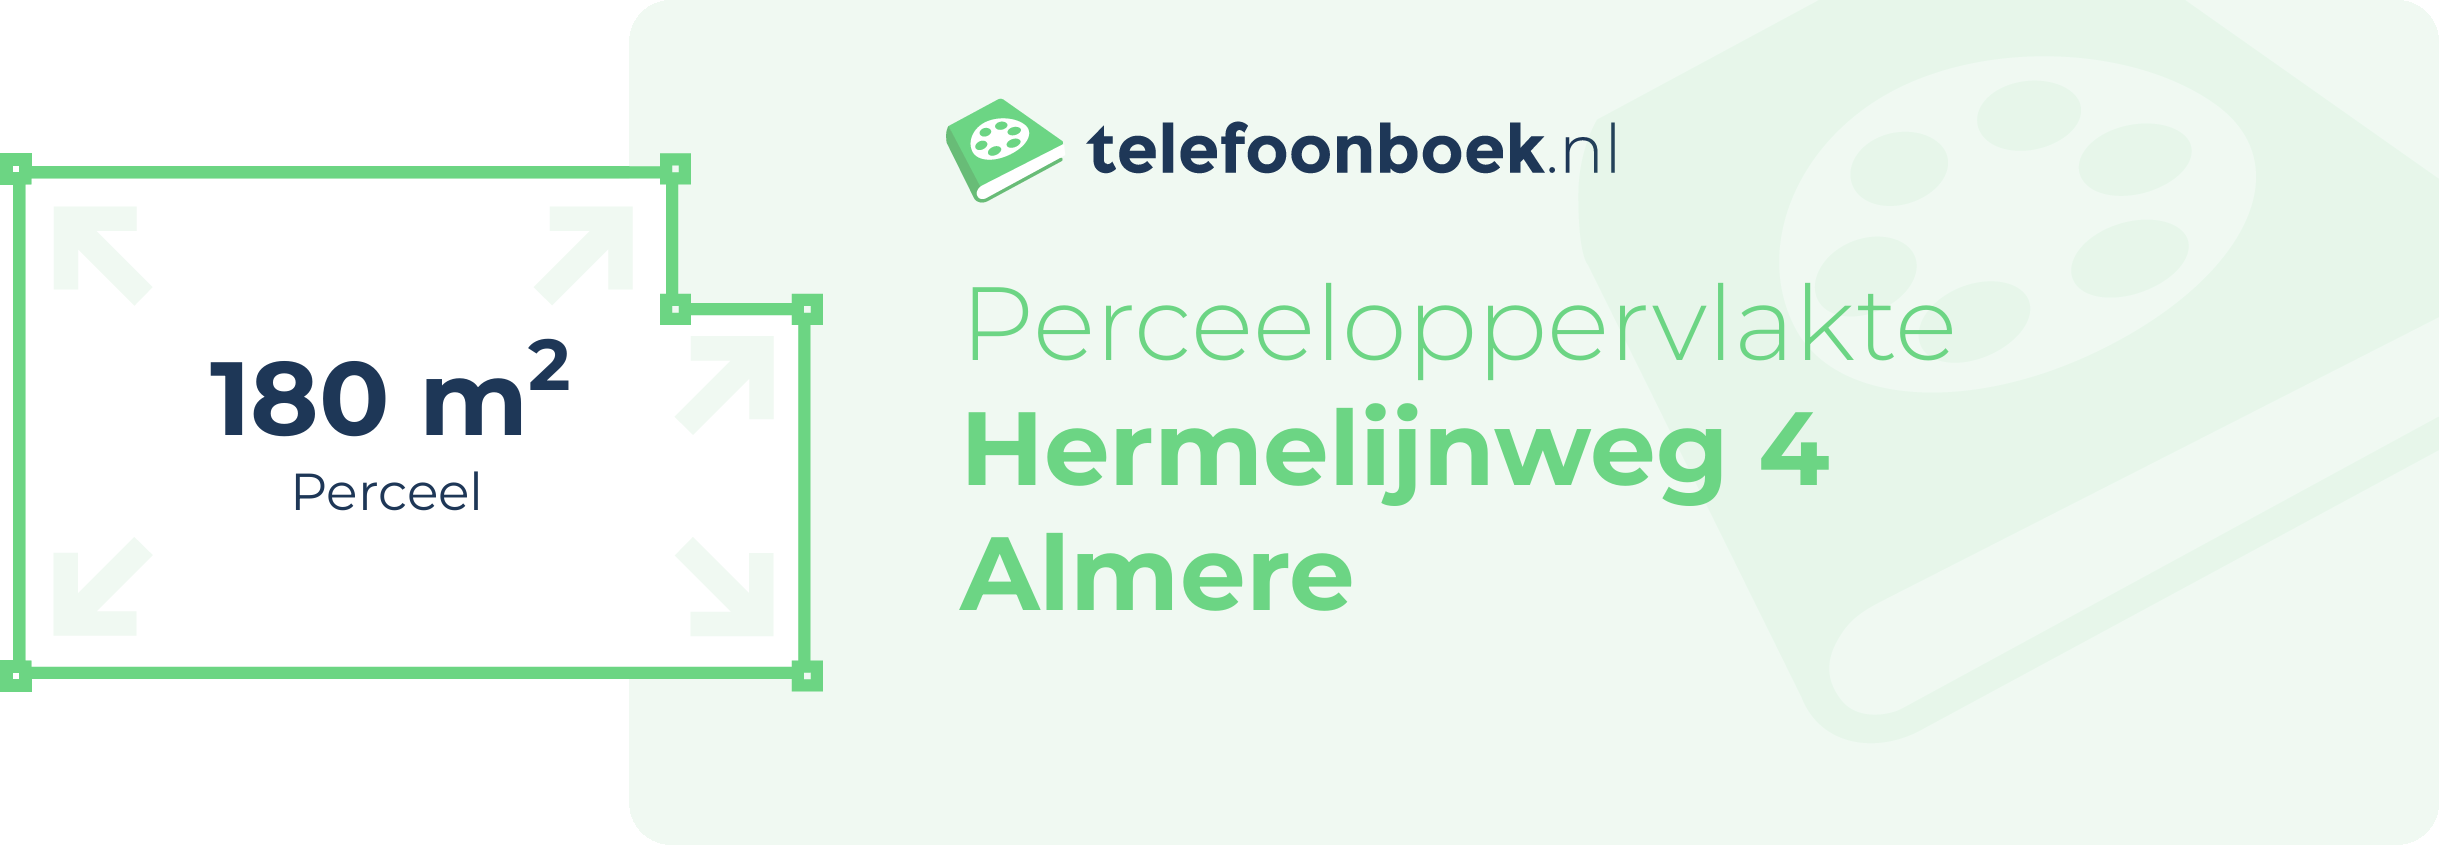 Perceeloppervlakte Hermelijnweg 4 Almere